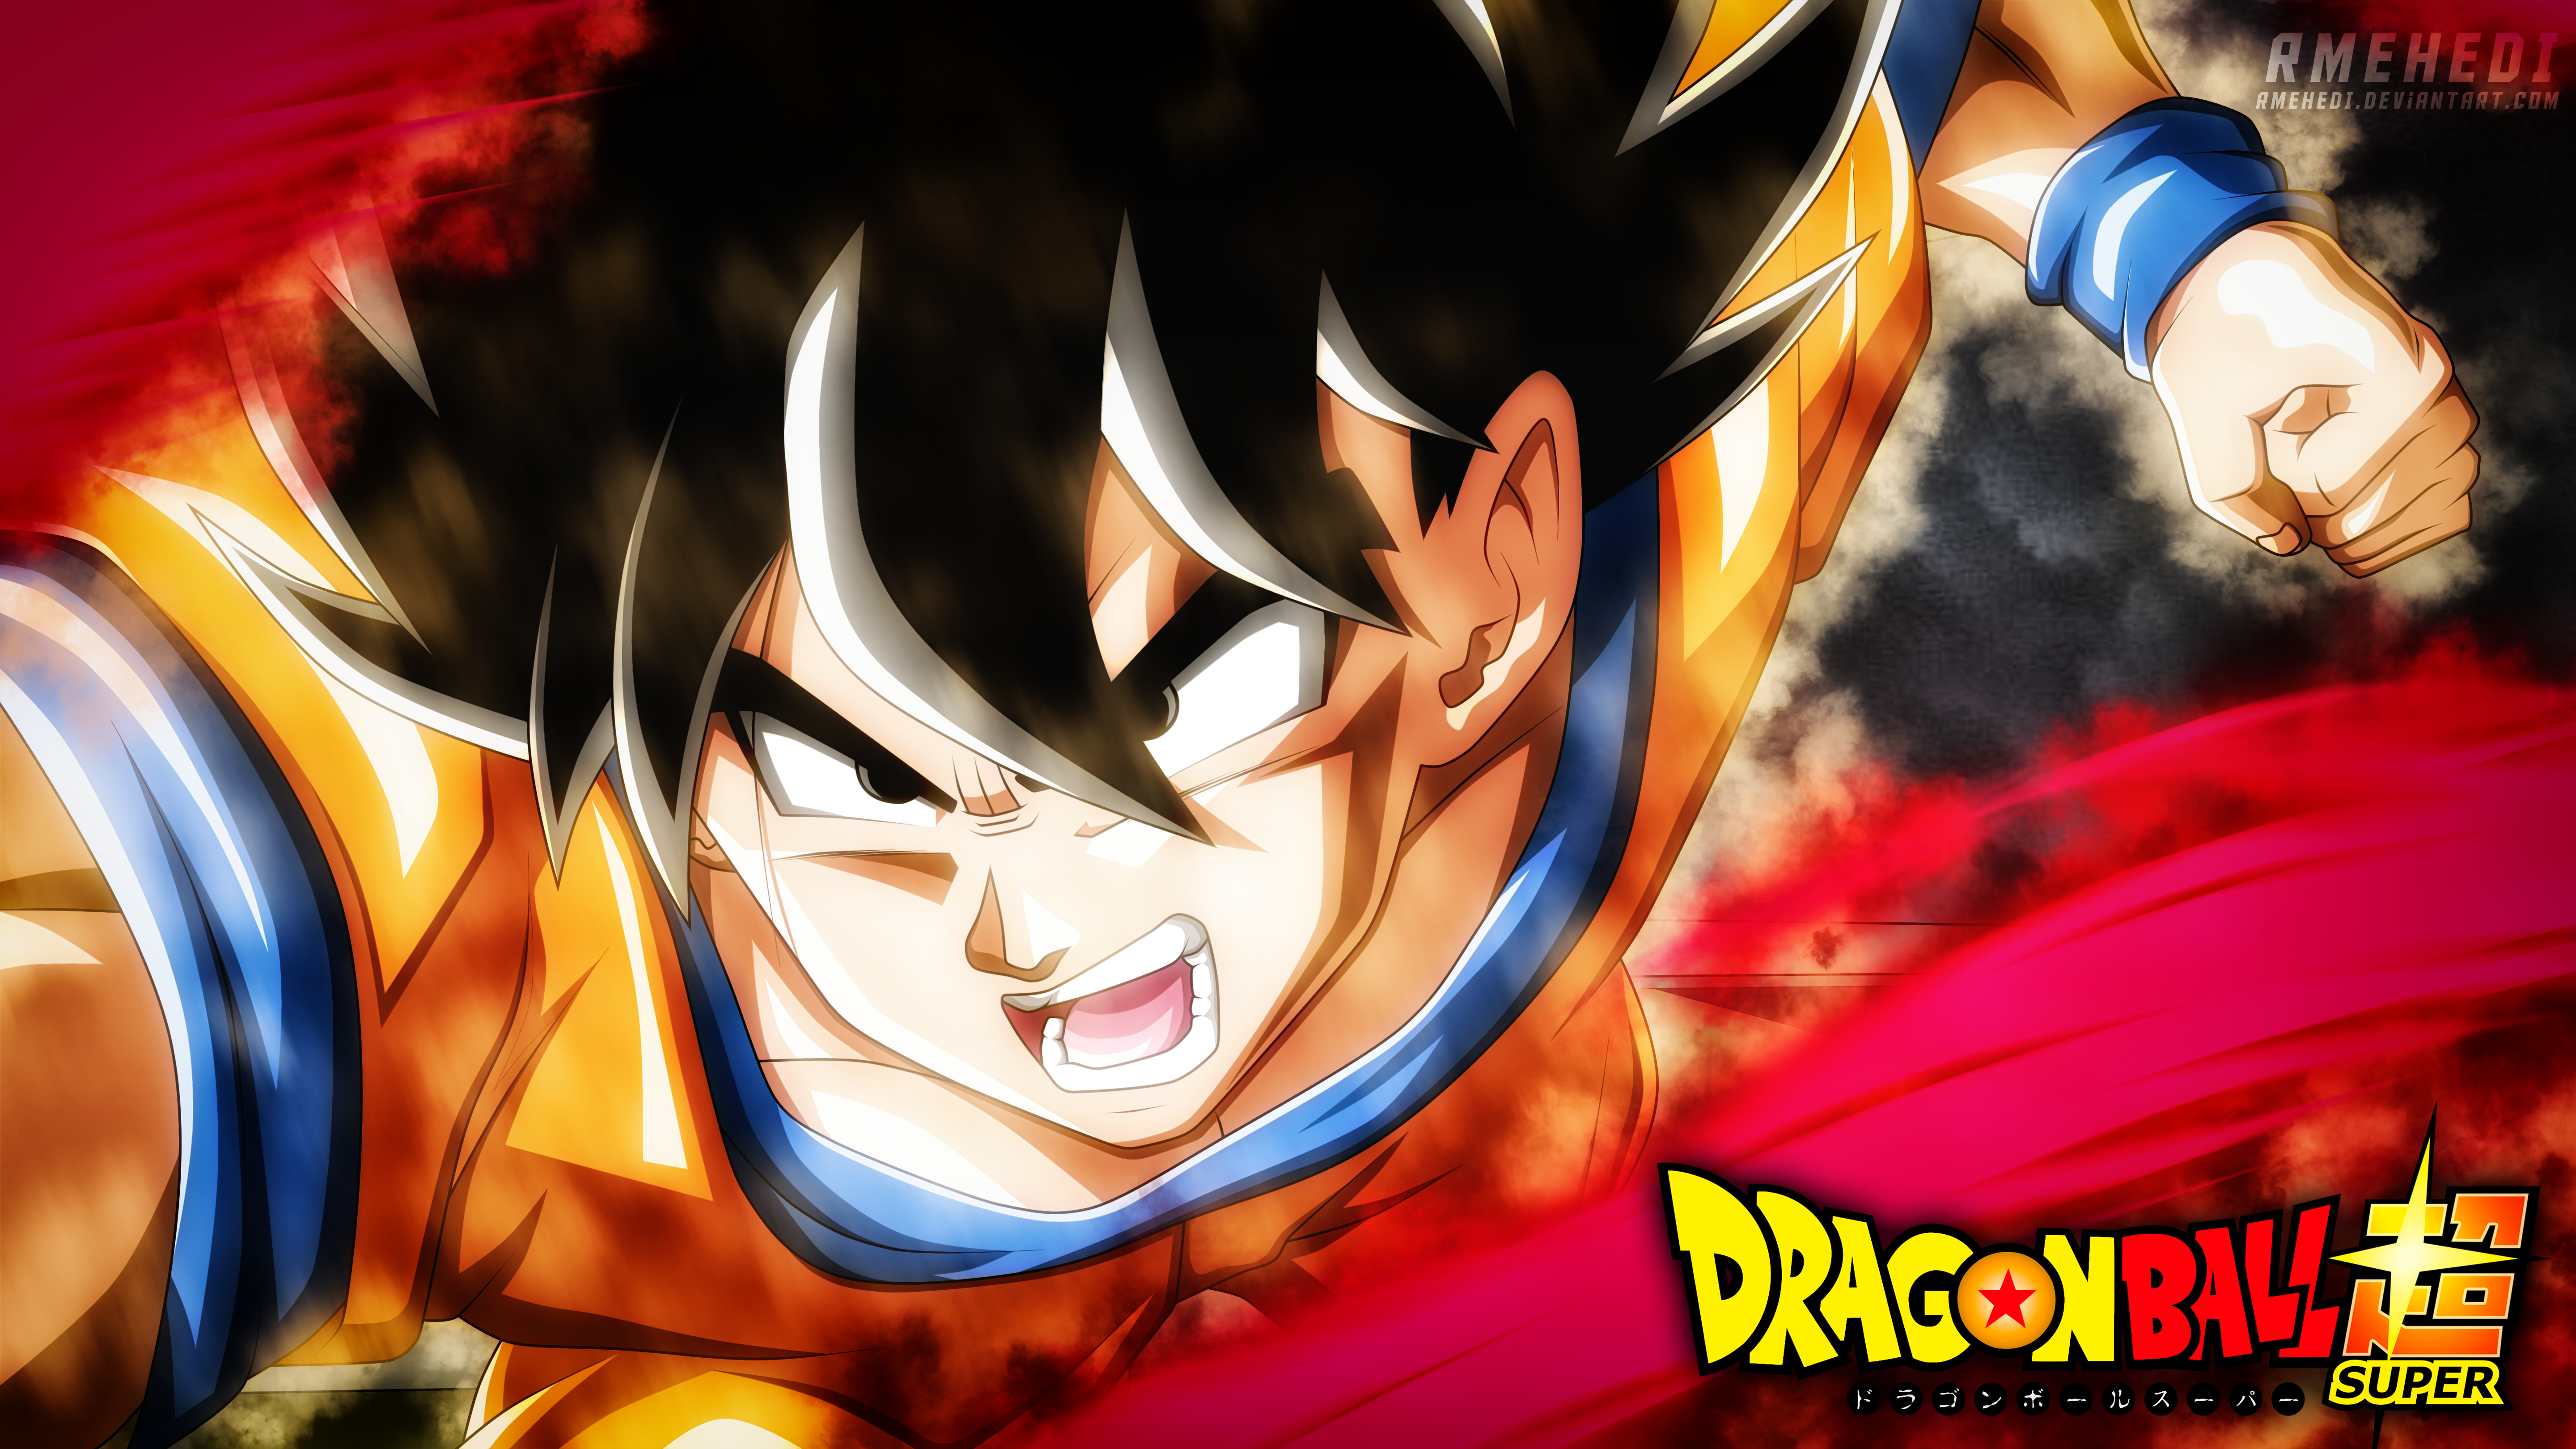 Anime Dragon Ball Super 4k Ultra HD Wallpaper by Sadman Sakib